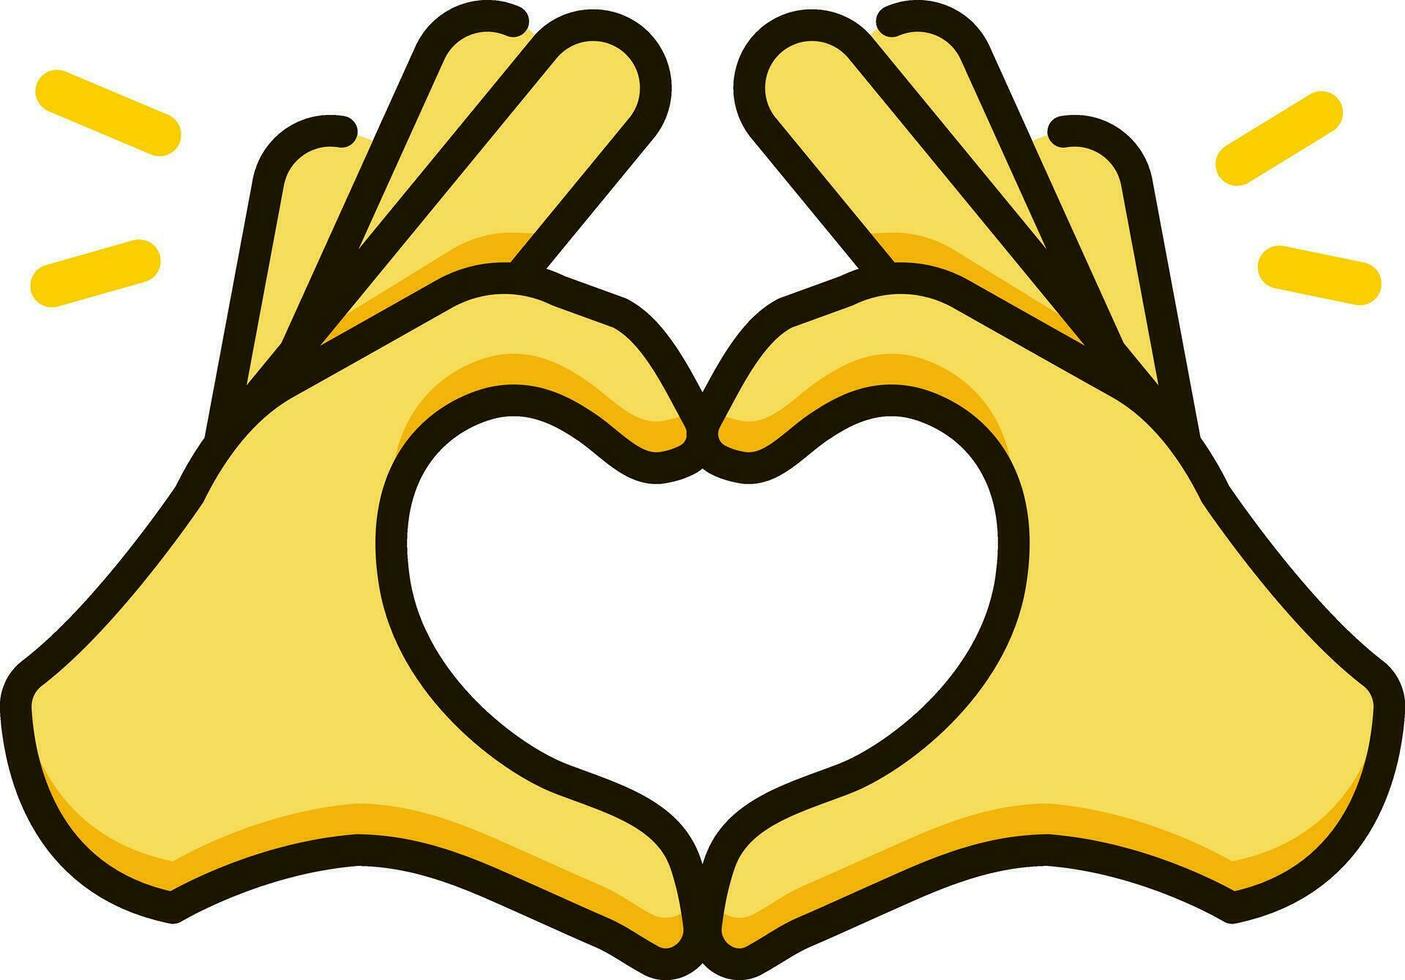 Heart hands icon emoji sticker vector